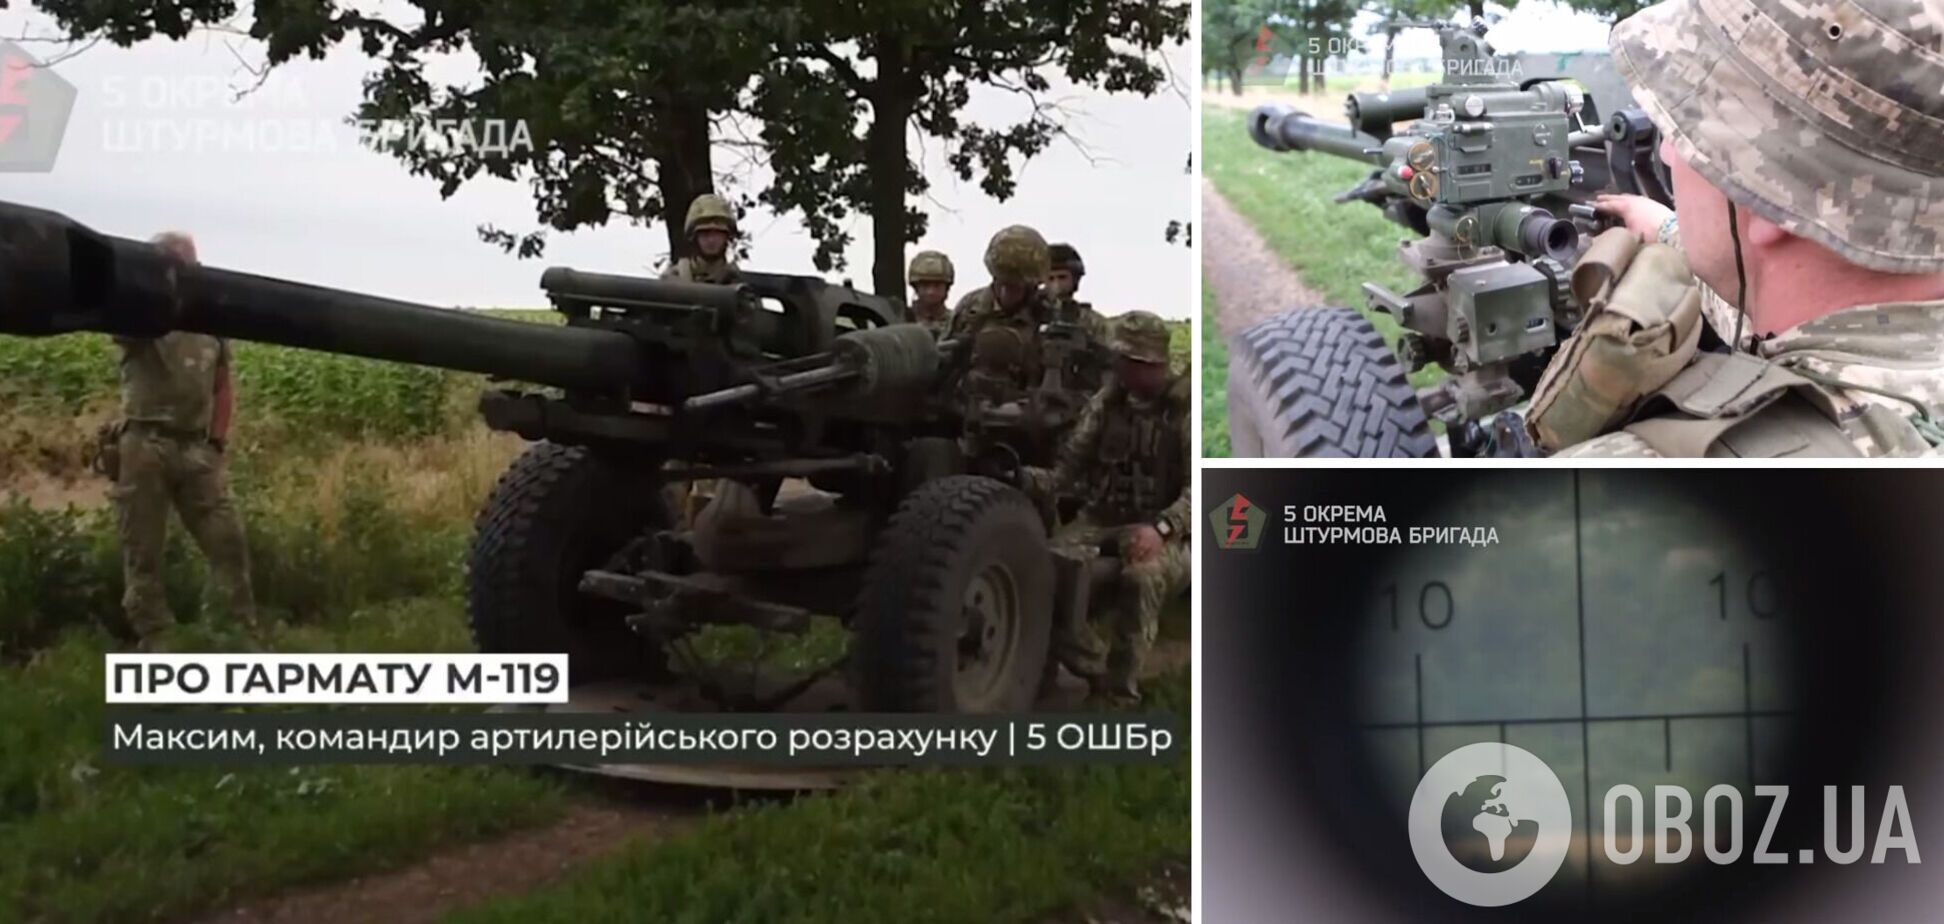 Украинская артиллерия эффективно бьет по оккупантам под Бахмутом из иностранного вооружения: видео